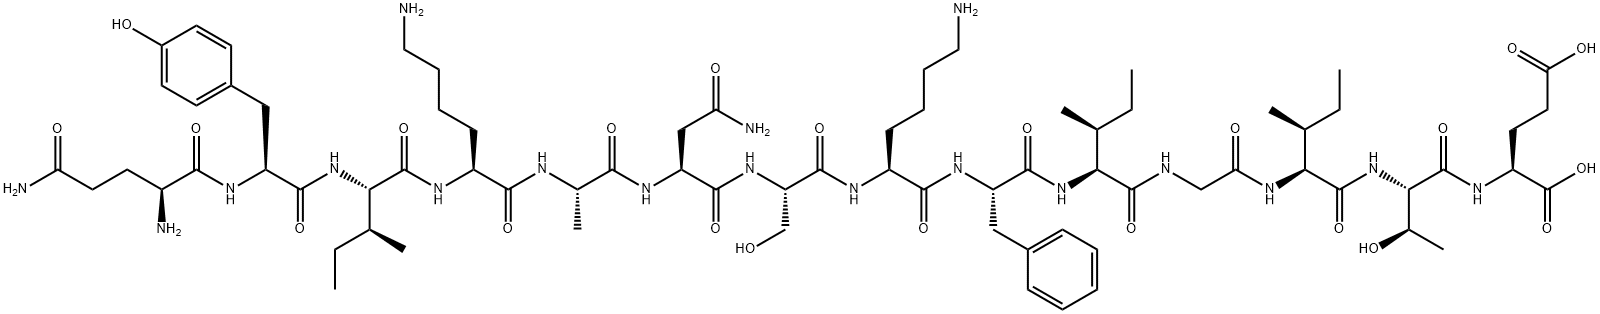 Tetanus toxin (830-843) Structure